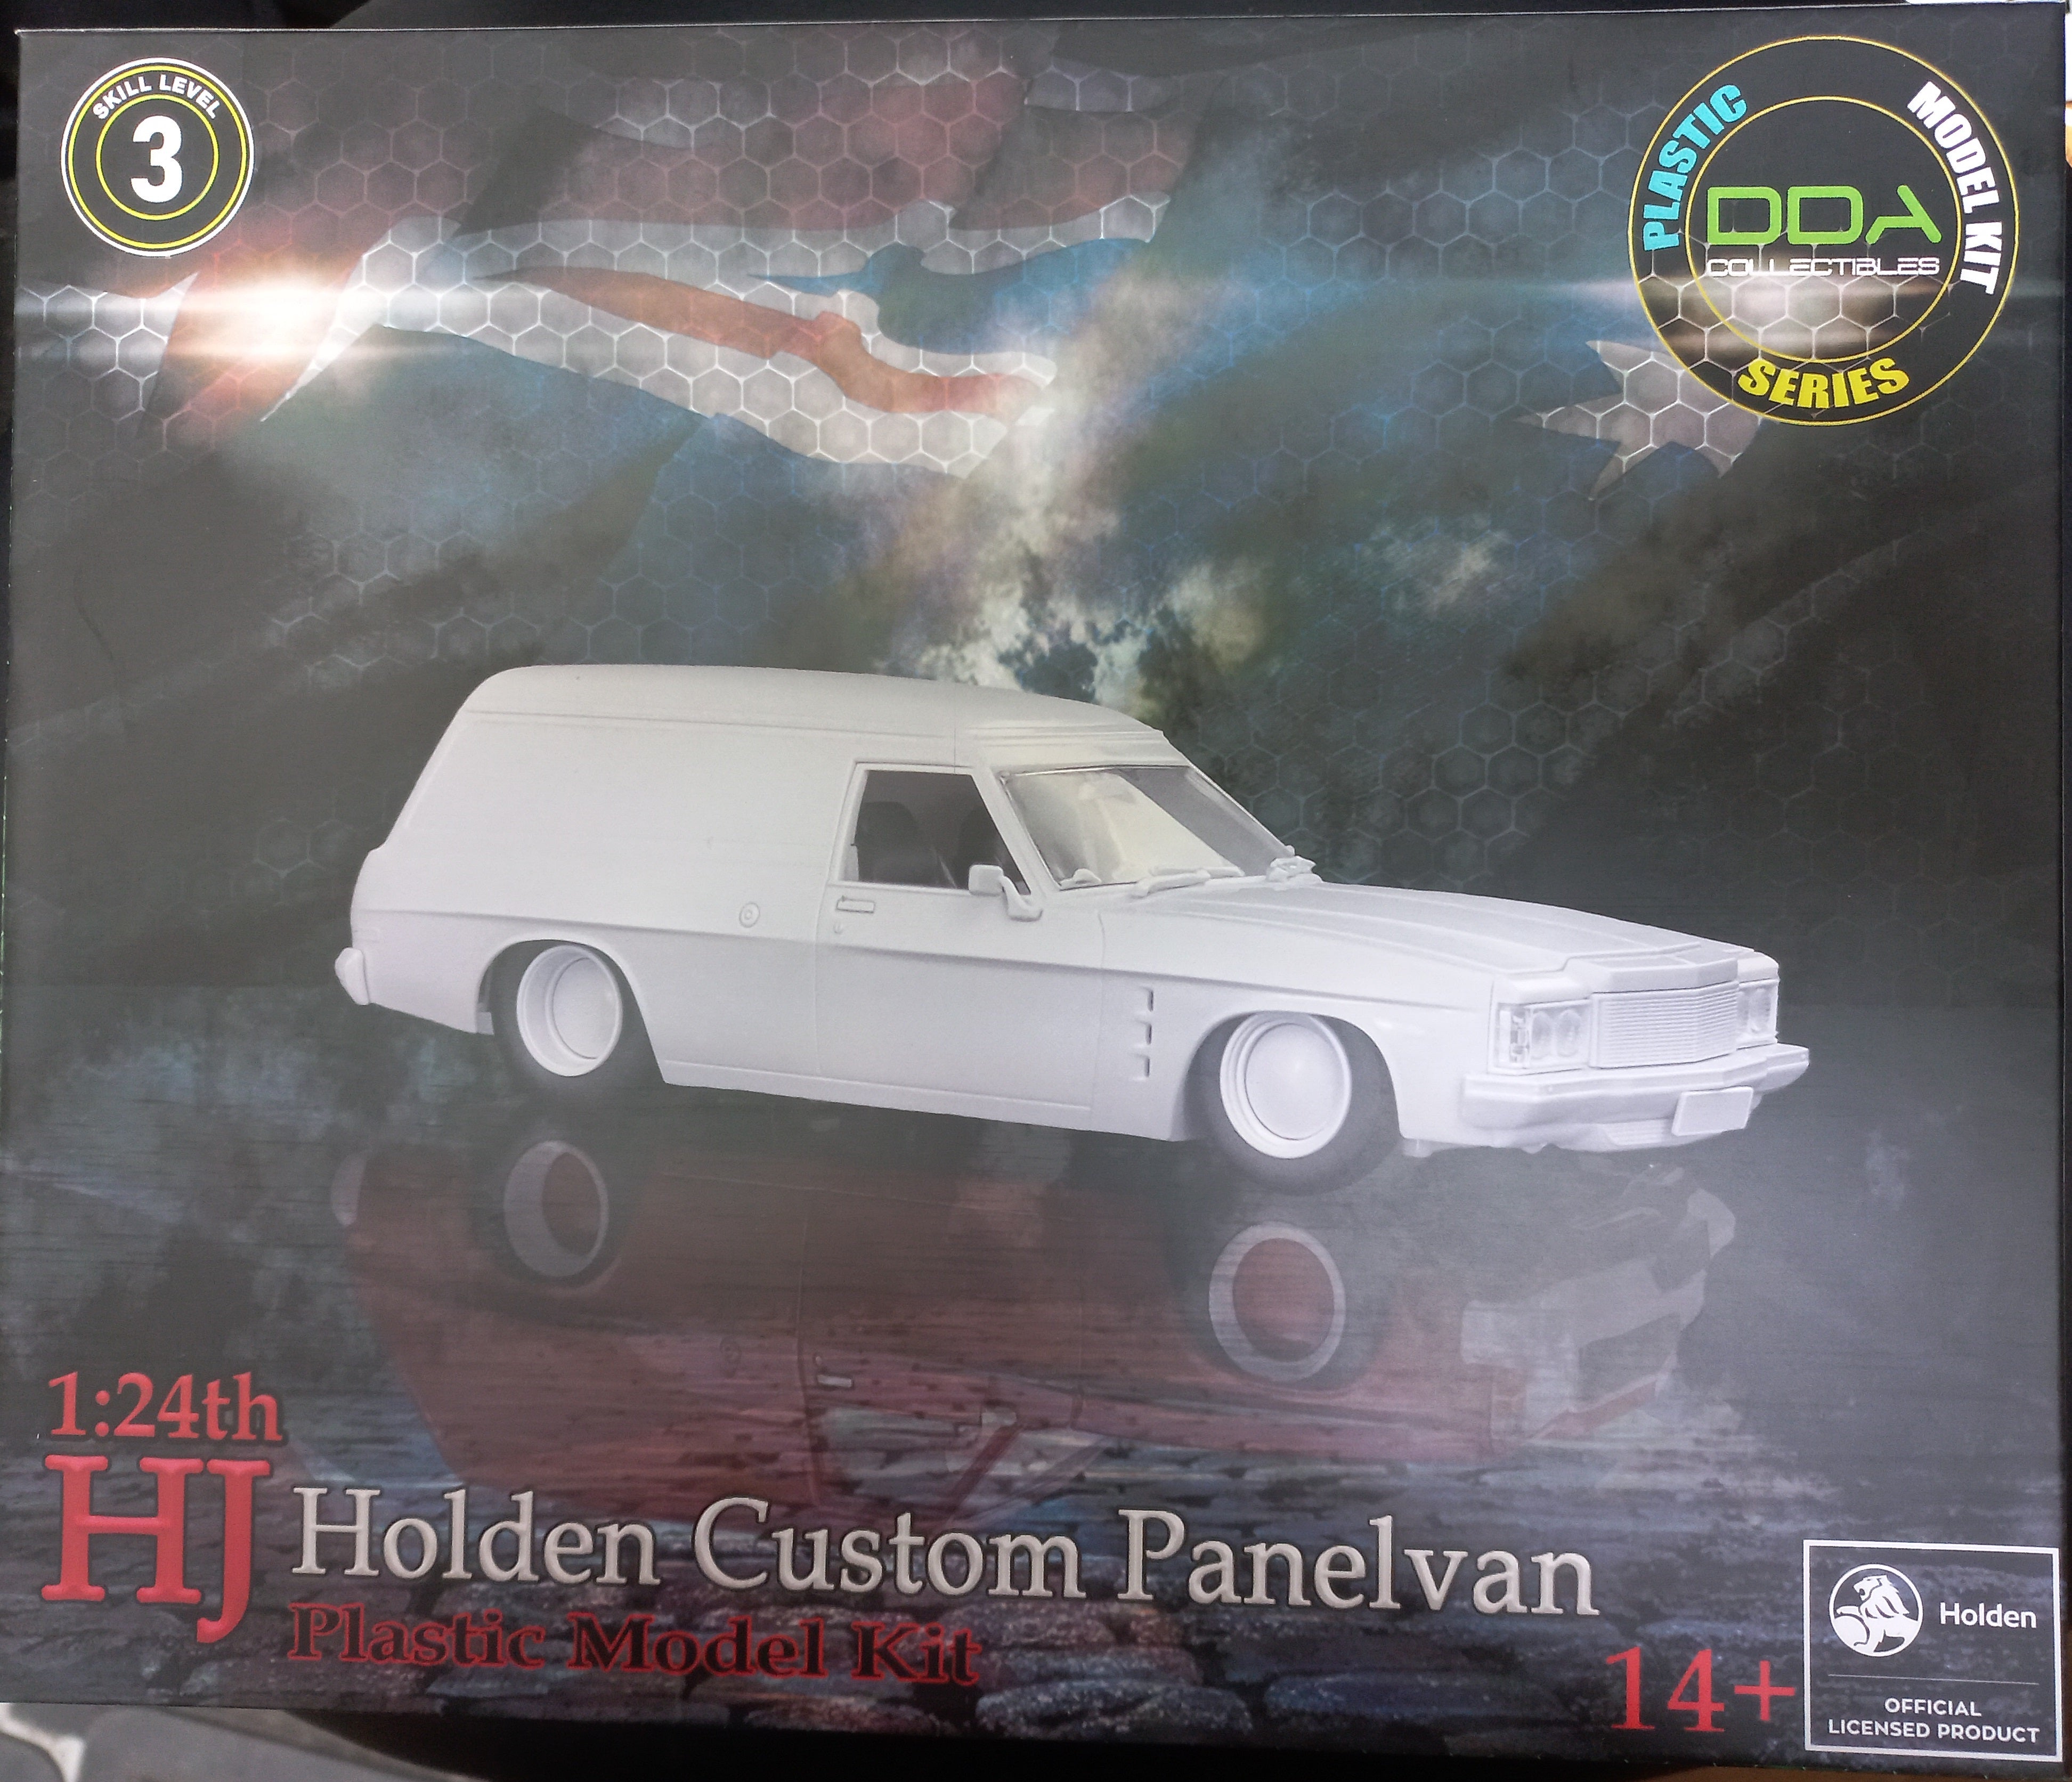 DDA Holden HJ Custom Panel Van 1/24 DDA508K